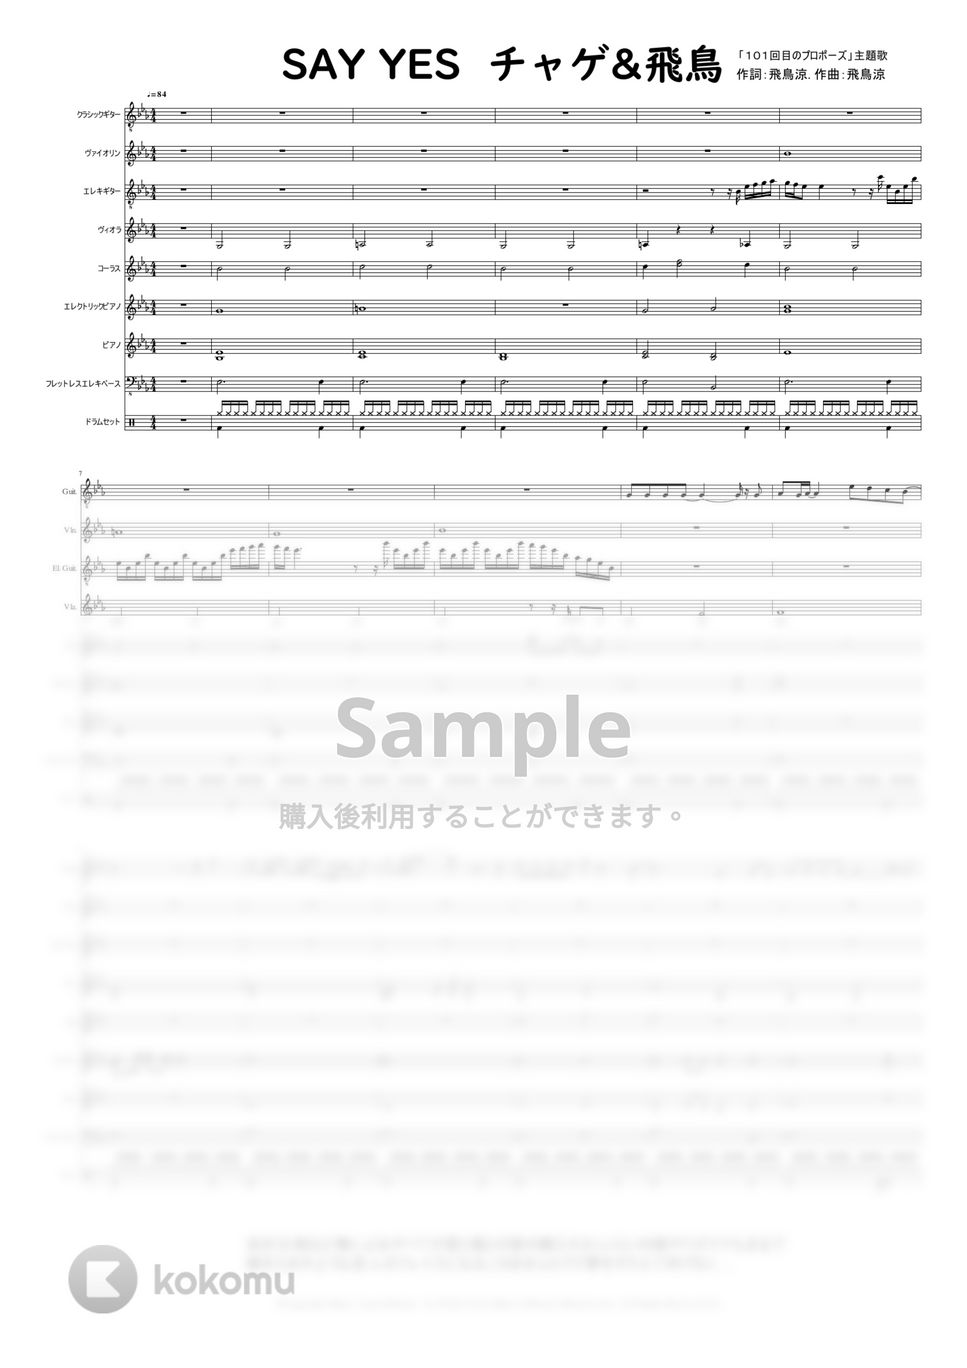 「チャゲ&飛鳥」作詞:飛鳥涼,作曲:飛鳥涼 - 『SAY YES』 by @MitsuruMinamiyama